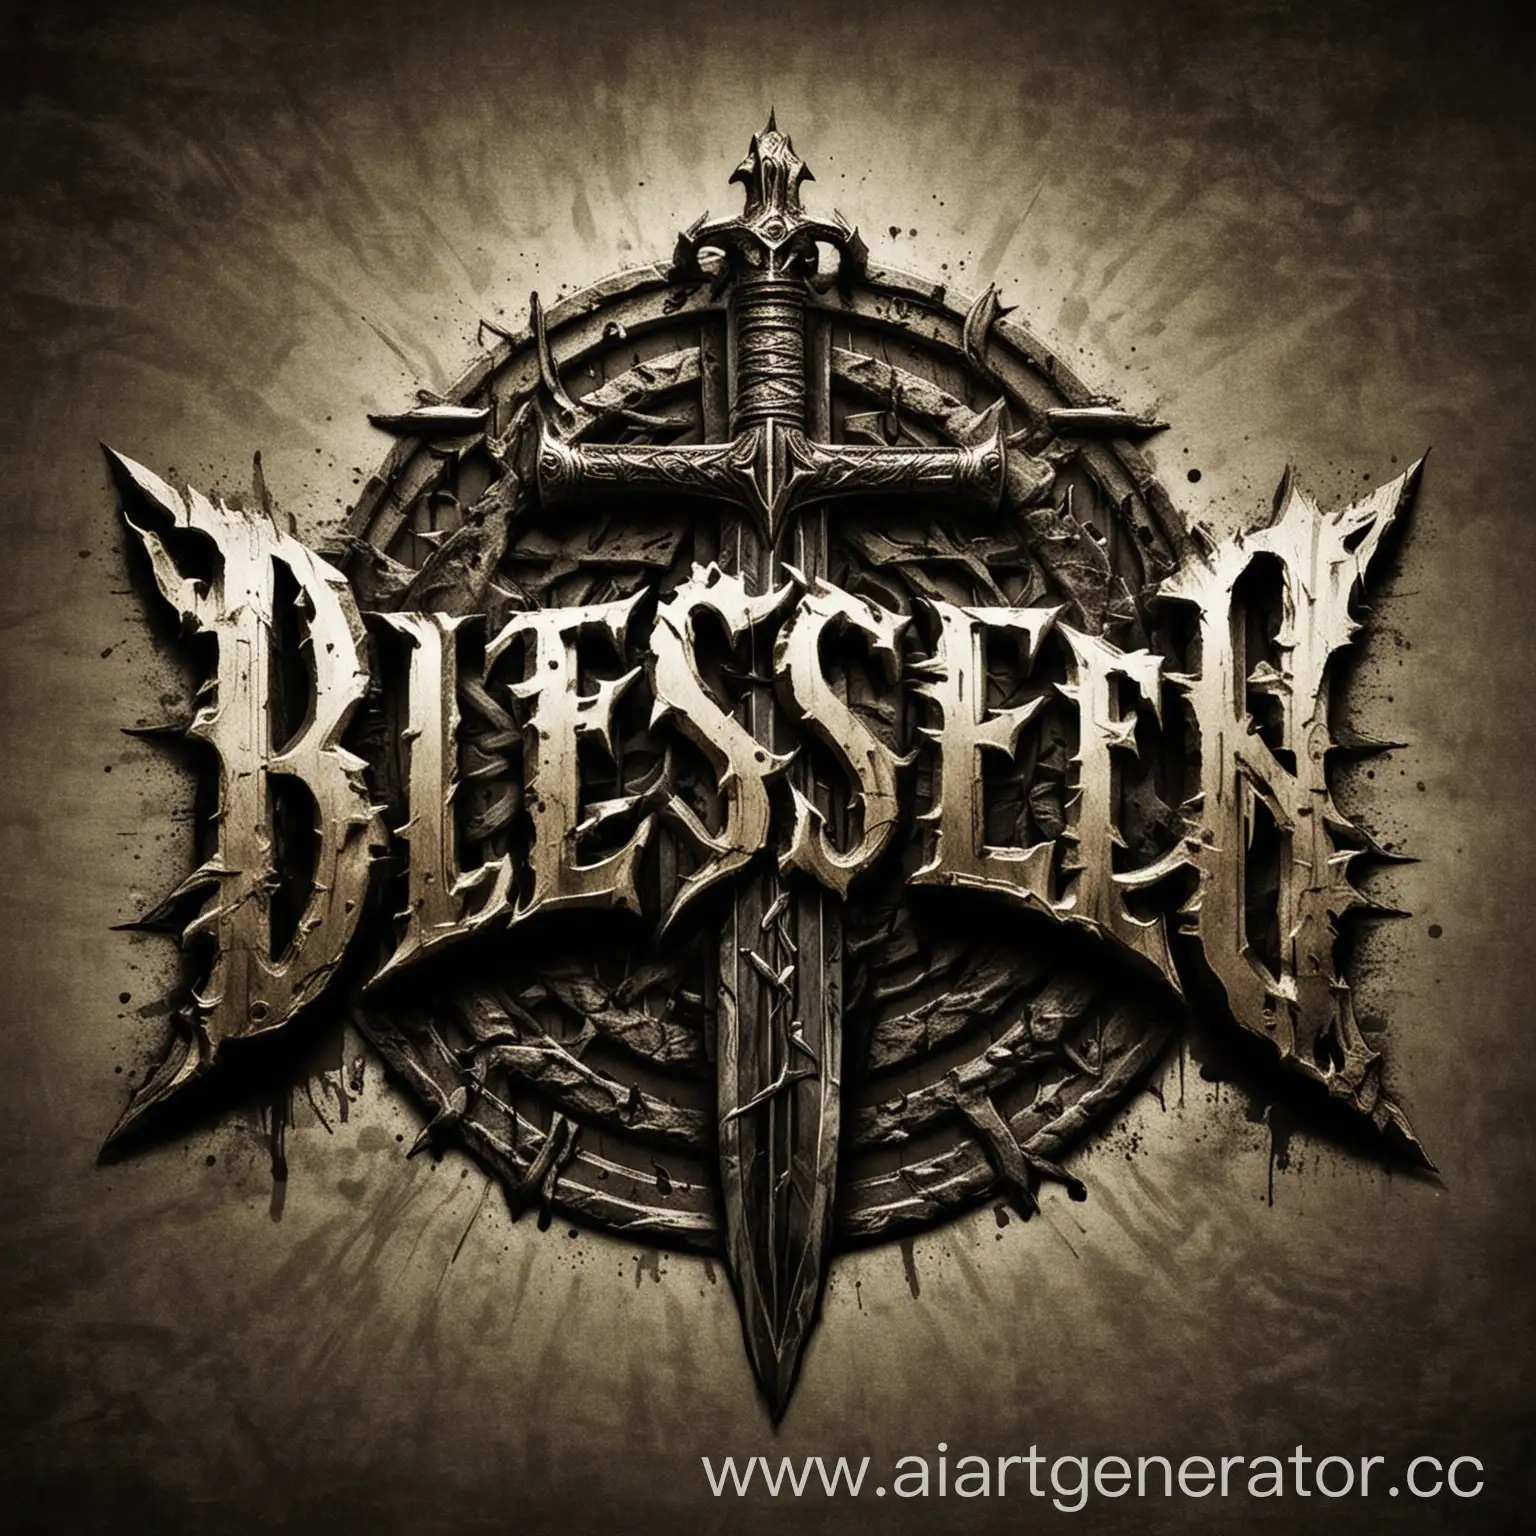 Blessed-Sword-Radiant-Emblem-of-Christian-Rock